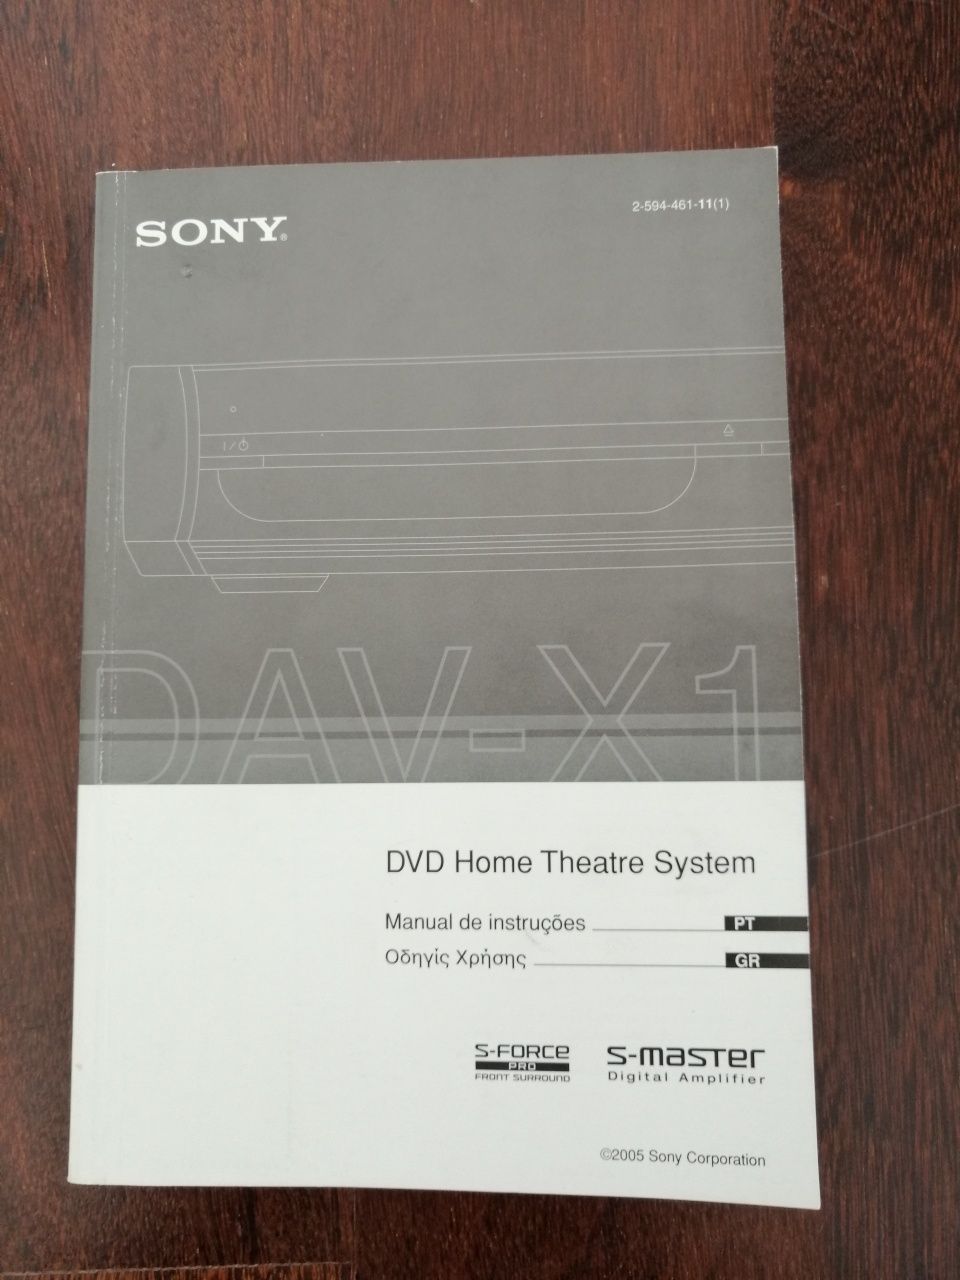 Sistema de som Sony DAV-X1 DVD Home Theatre System - redução de 65%!